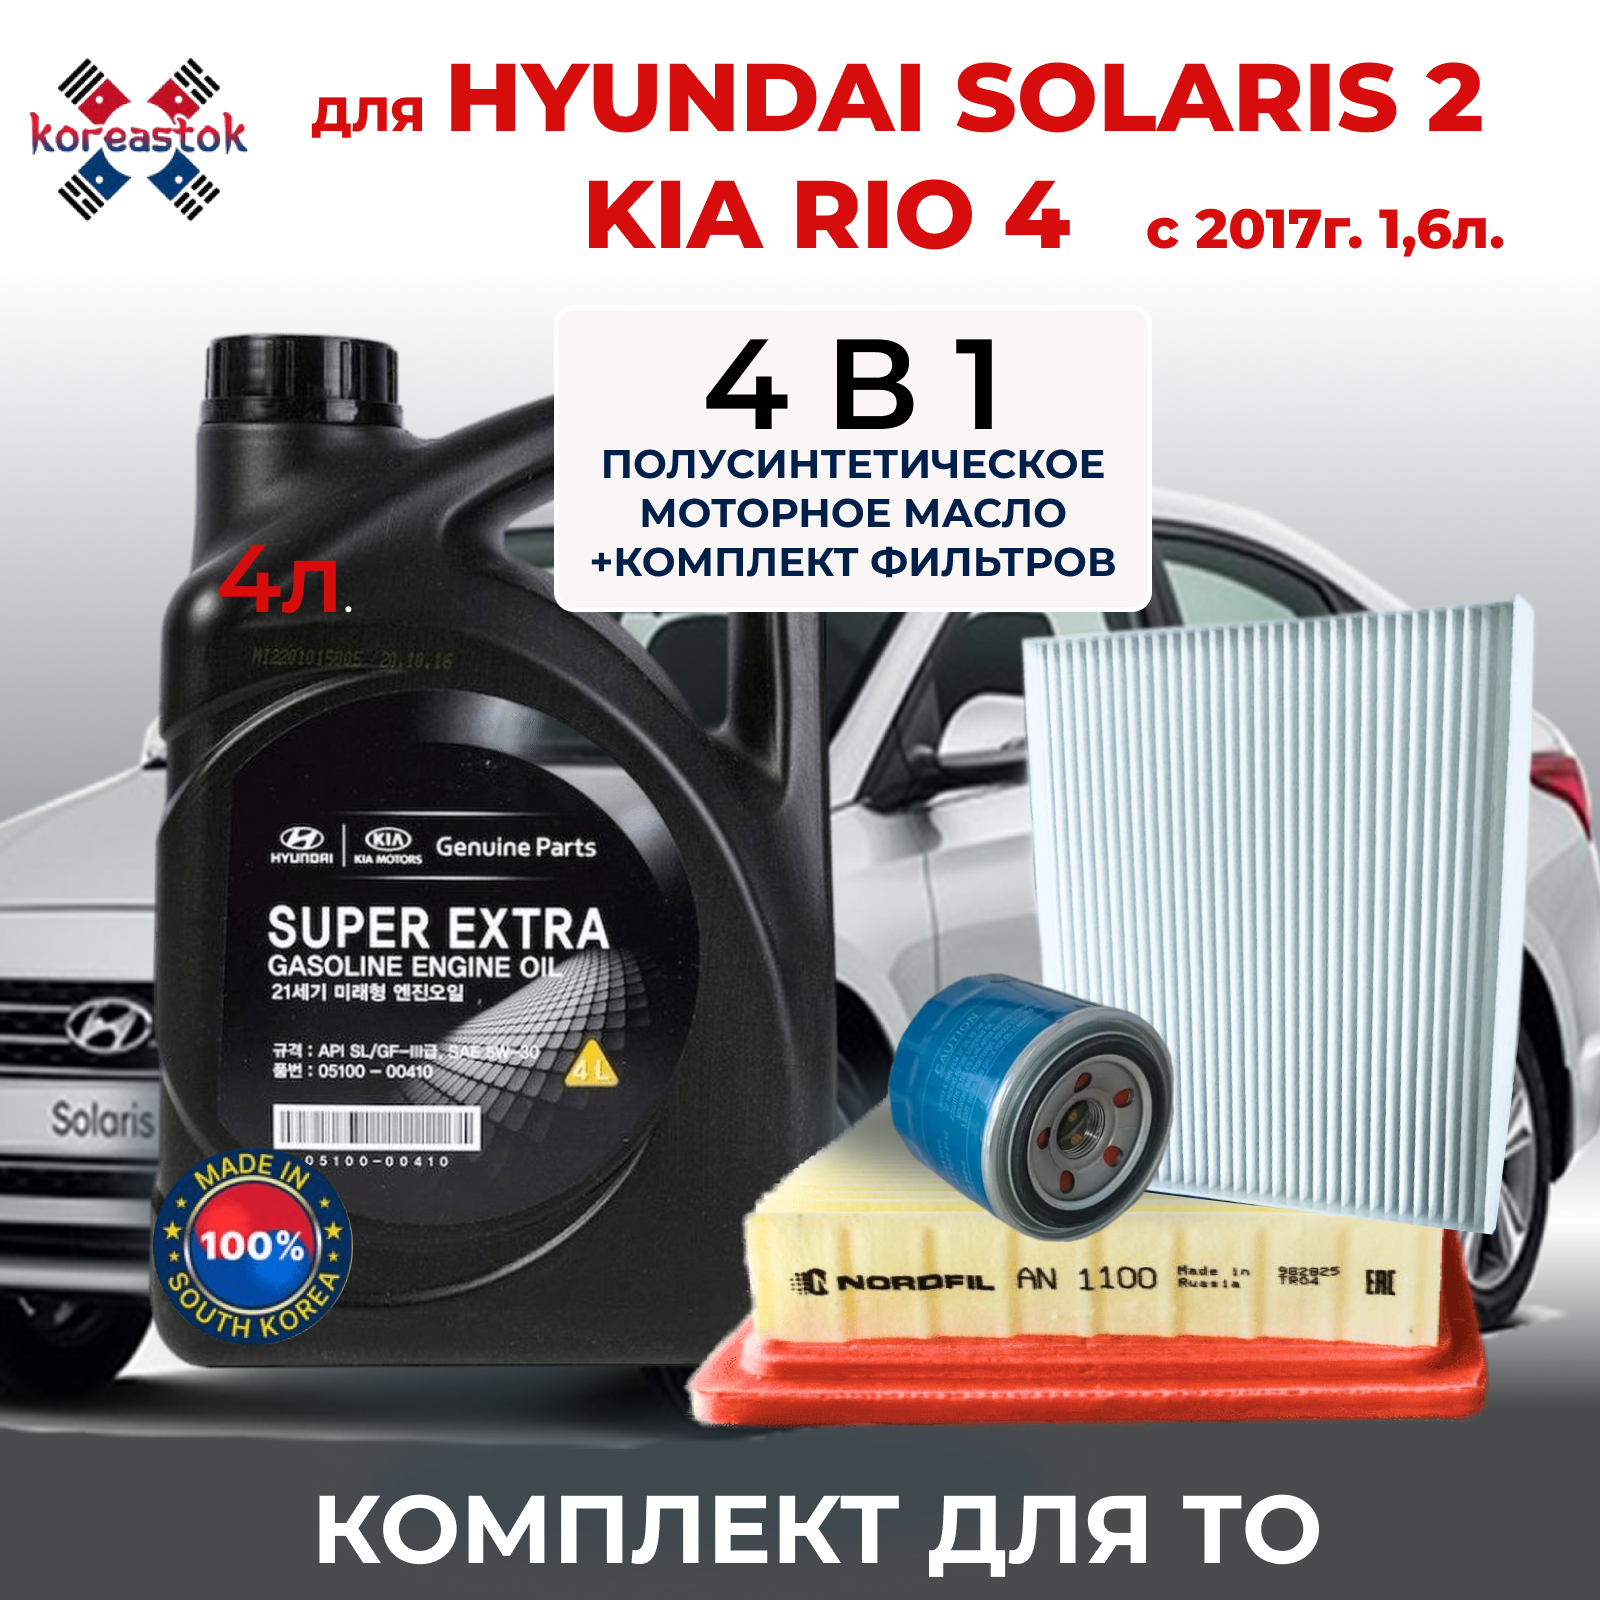 4 в 1. Mасло моторное 5W-30 + набор фильтров (масляный  воздушный салонный)для KIA RIO HYUNDAI SOLARIS 1.6 с 2017г.